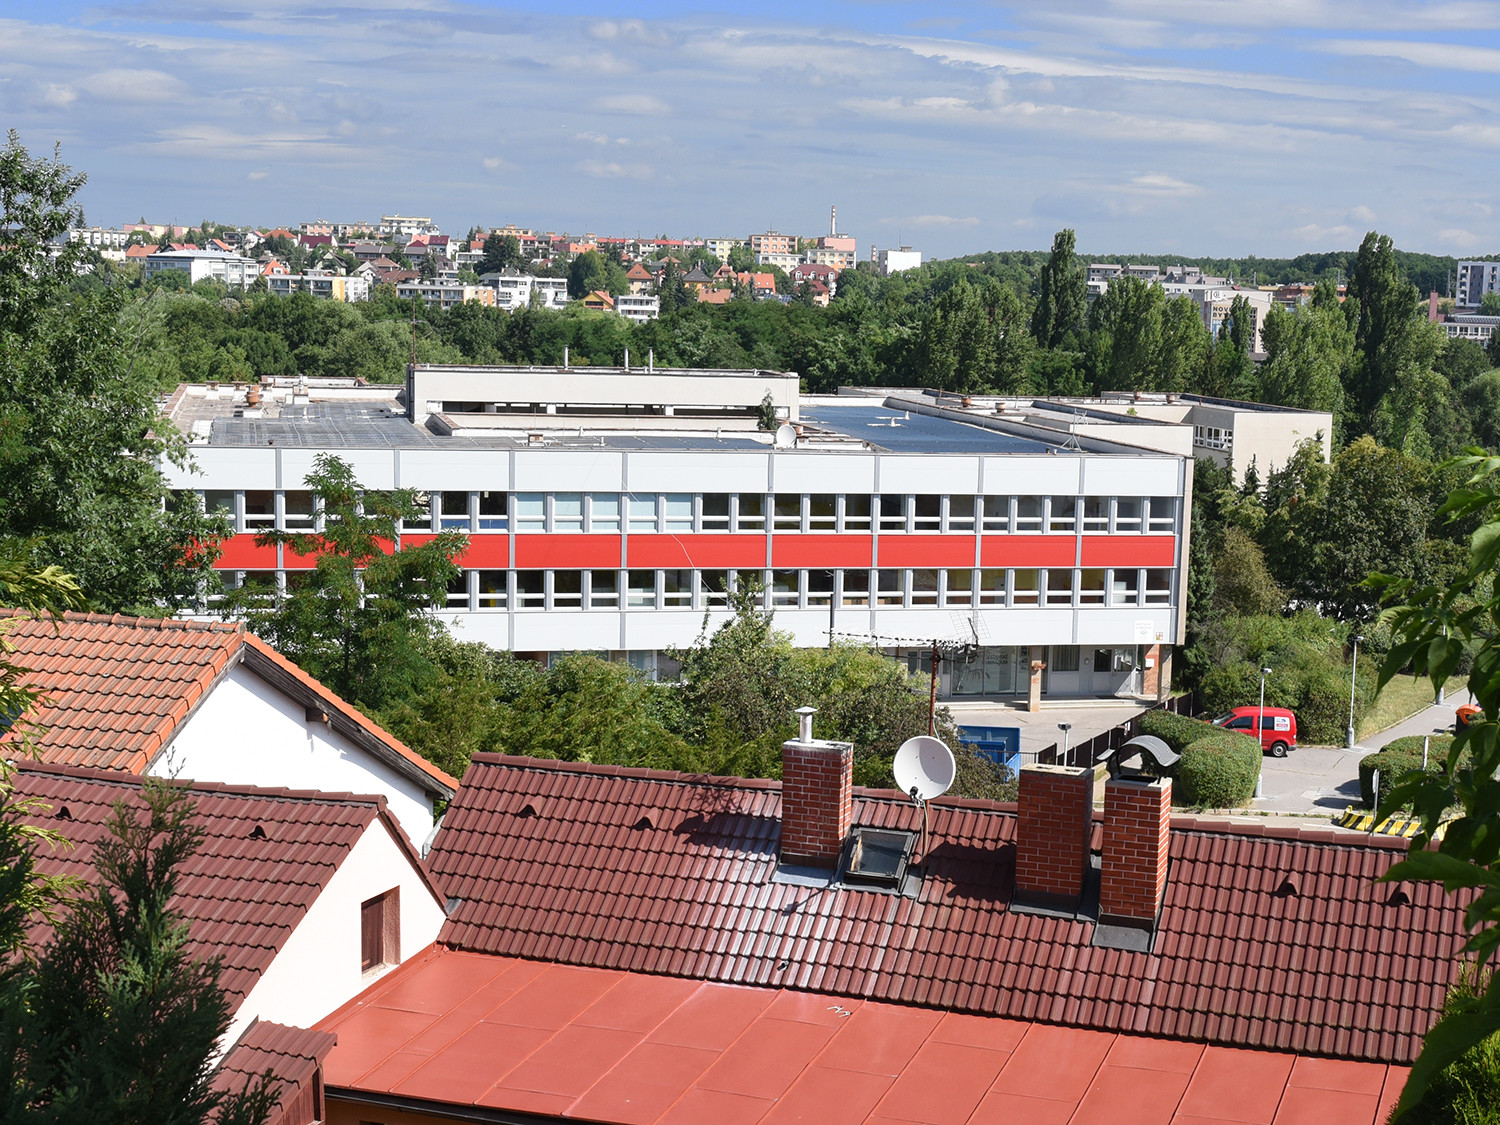 Základní škola Košík (dnes Hostivař), kde Jan Svoboda někdy kolem roku 1990 vymyslel žákovská stipendia, o která ani tam, ani nikde jinde, nebyl a není zájem